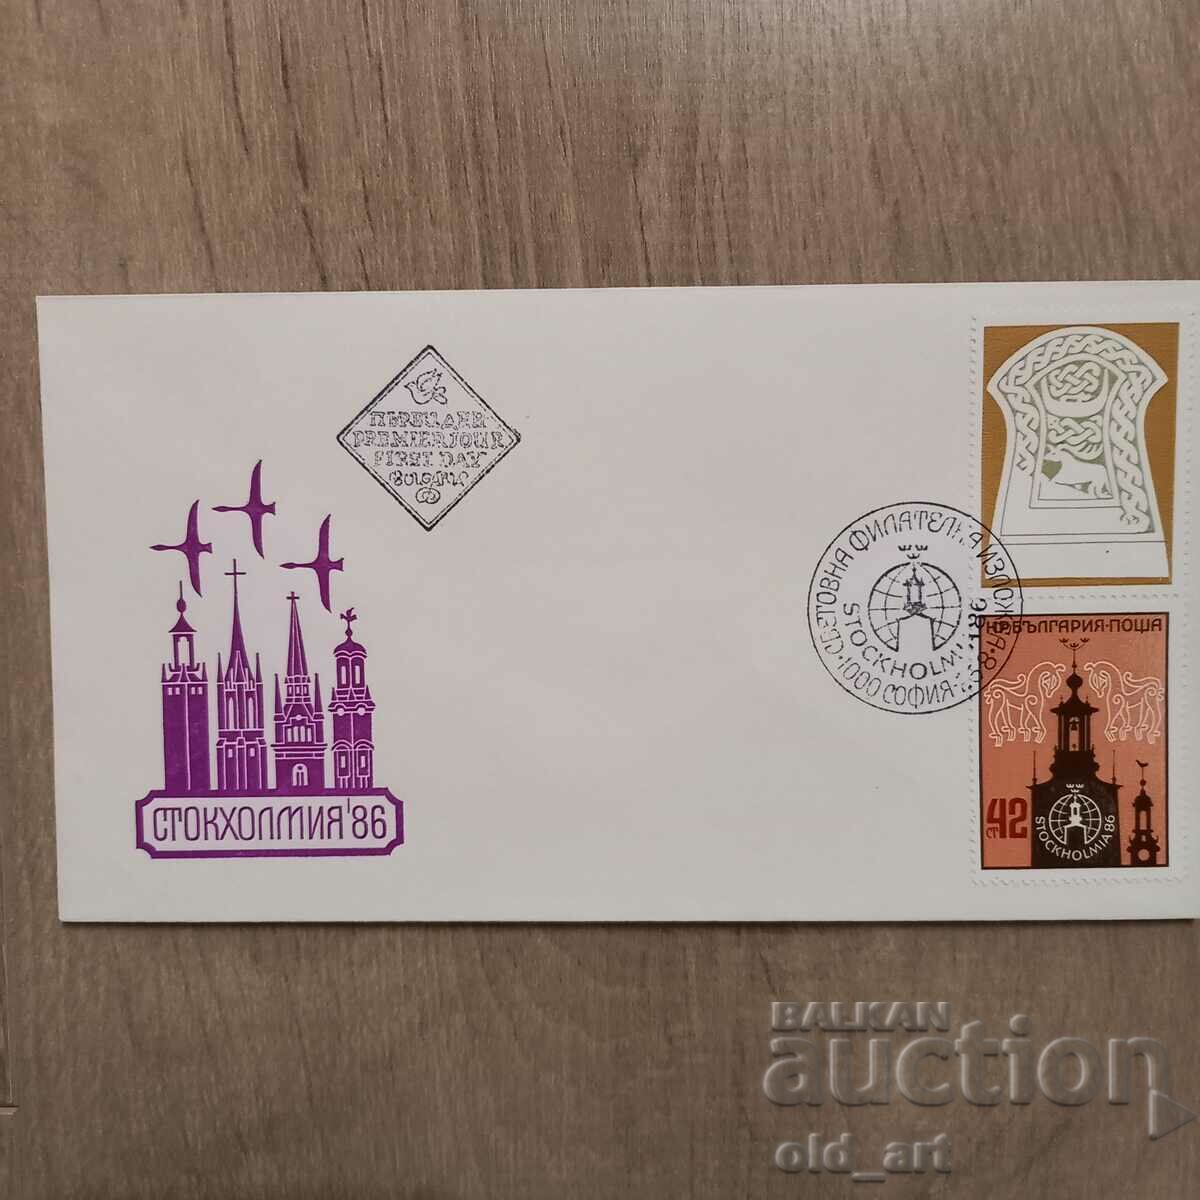 Ταχυδρομικός φάκελος - Αγ. Φιλοτελική έκθεση Στοκχόλμη 86